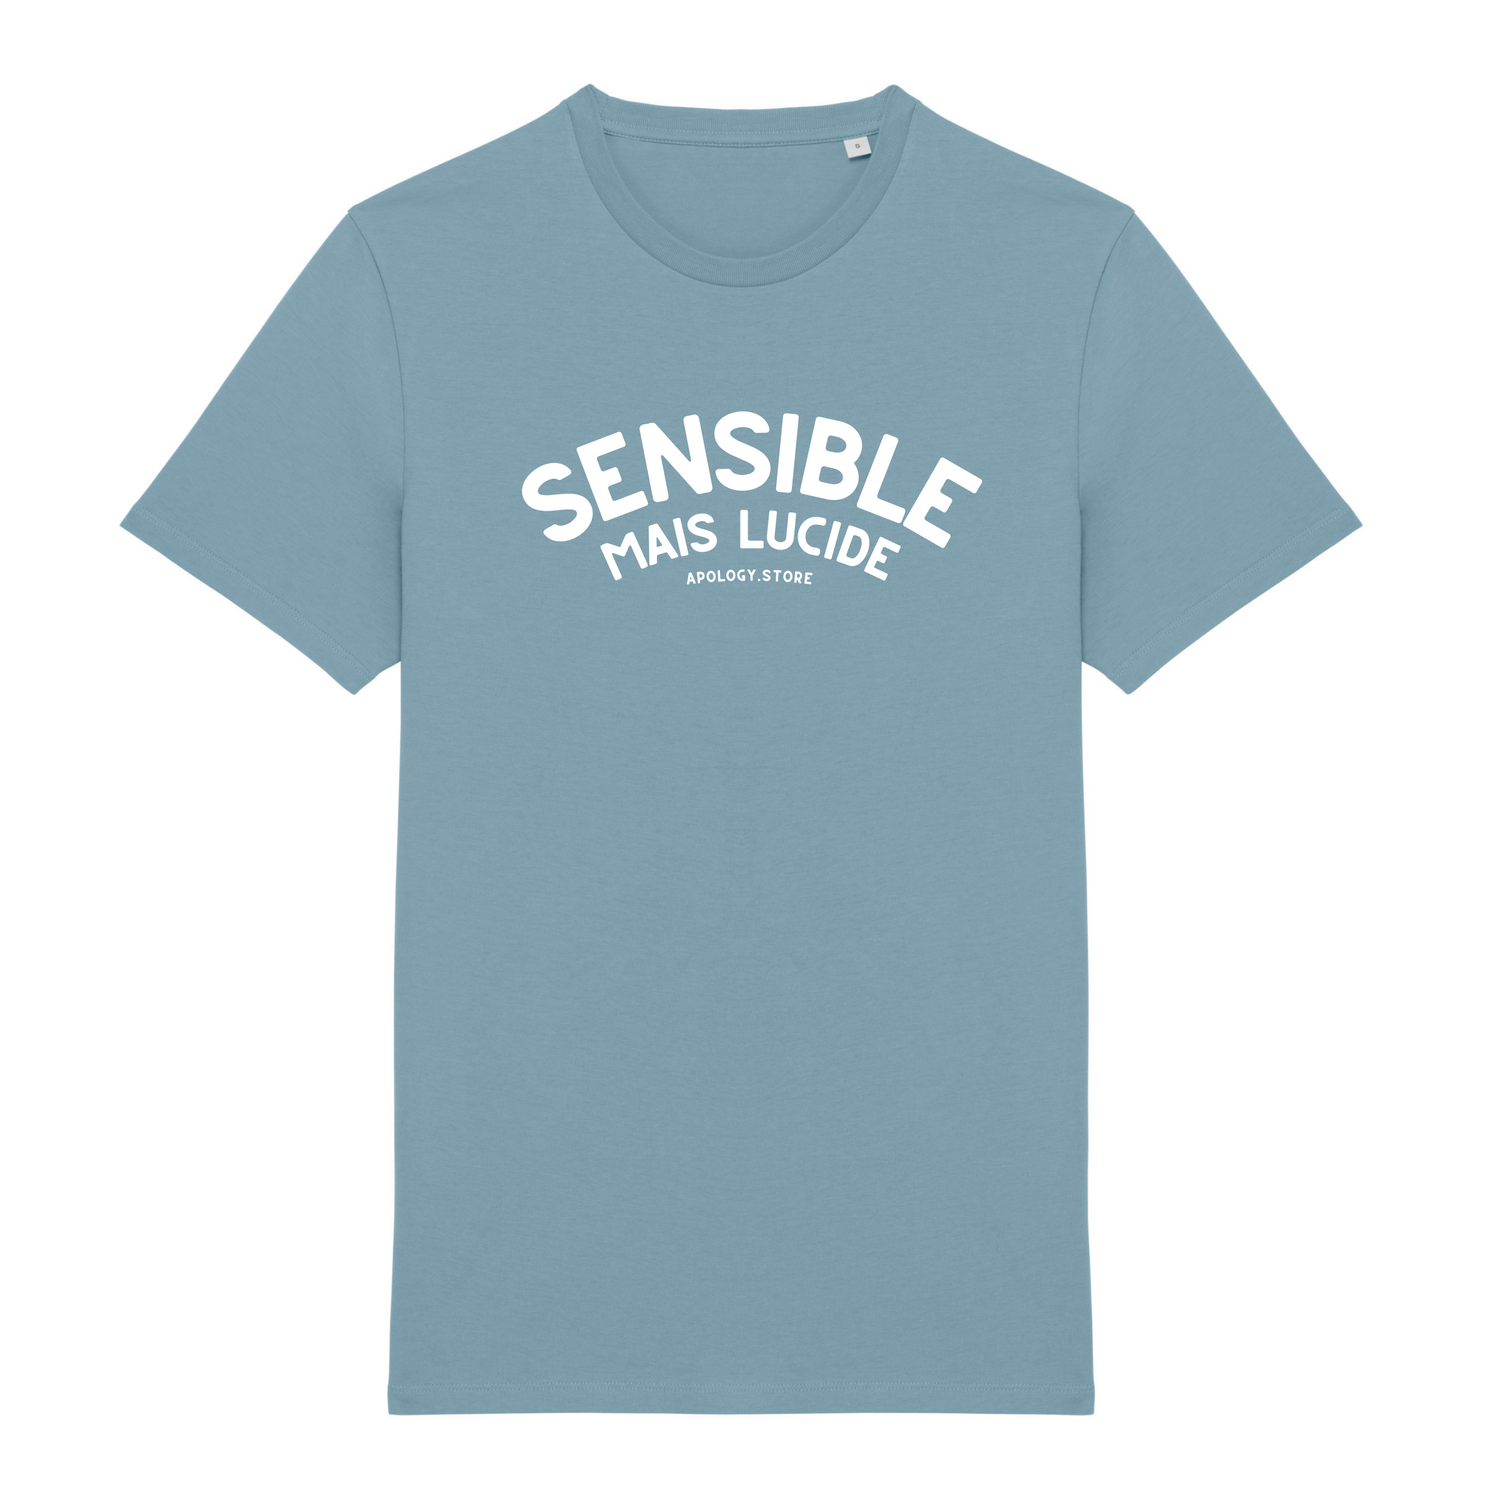 T-shirt Sensible mais lucide - Fabriqué au Portugal XS Bleu_arctique - Imprimé en France